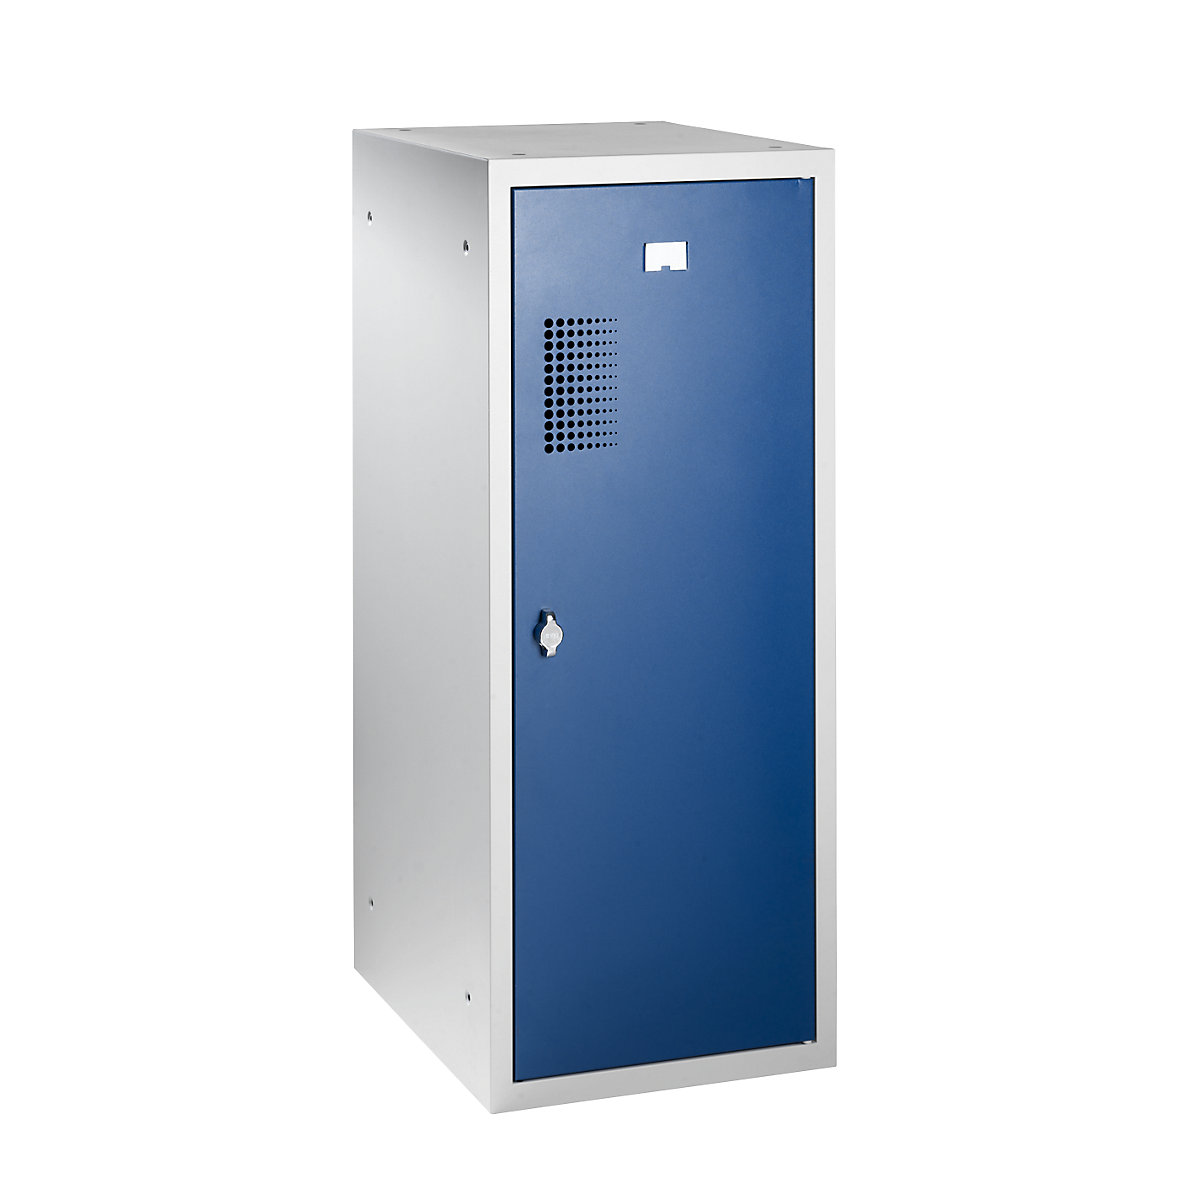 EUROKRAFTbasic – Kombinovaná skriňa s uzamykateľnými priehradkami, samostatný modul, v x š x h 1000 x 400 x 500 mm, so zariadením pre visiaci zámok, korpus svetlošedá / dvere enciánová modrá